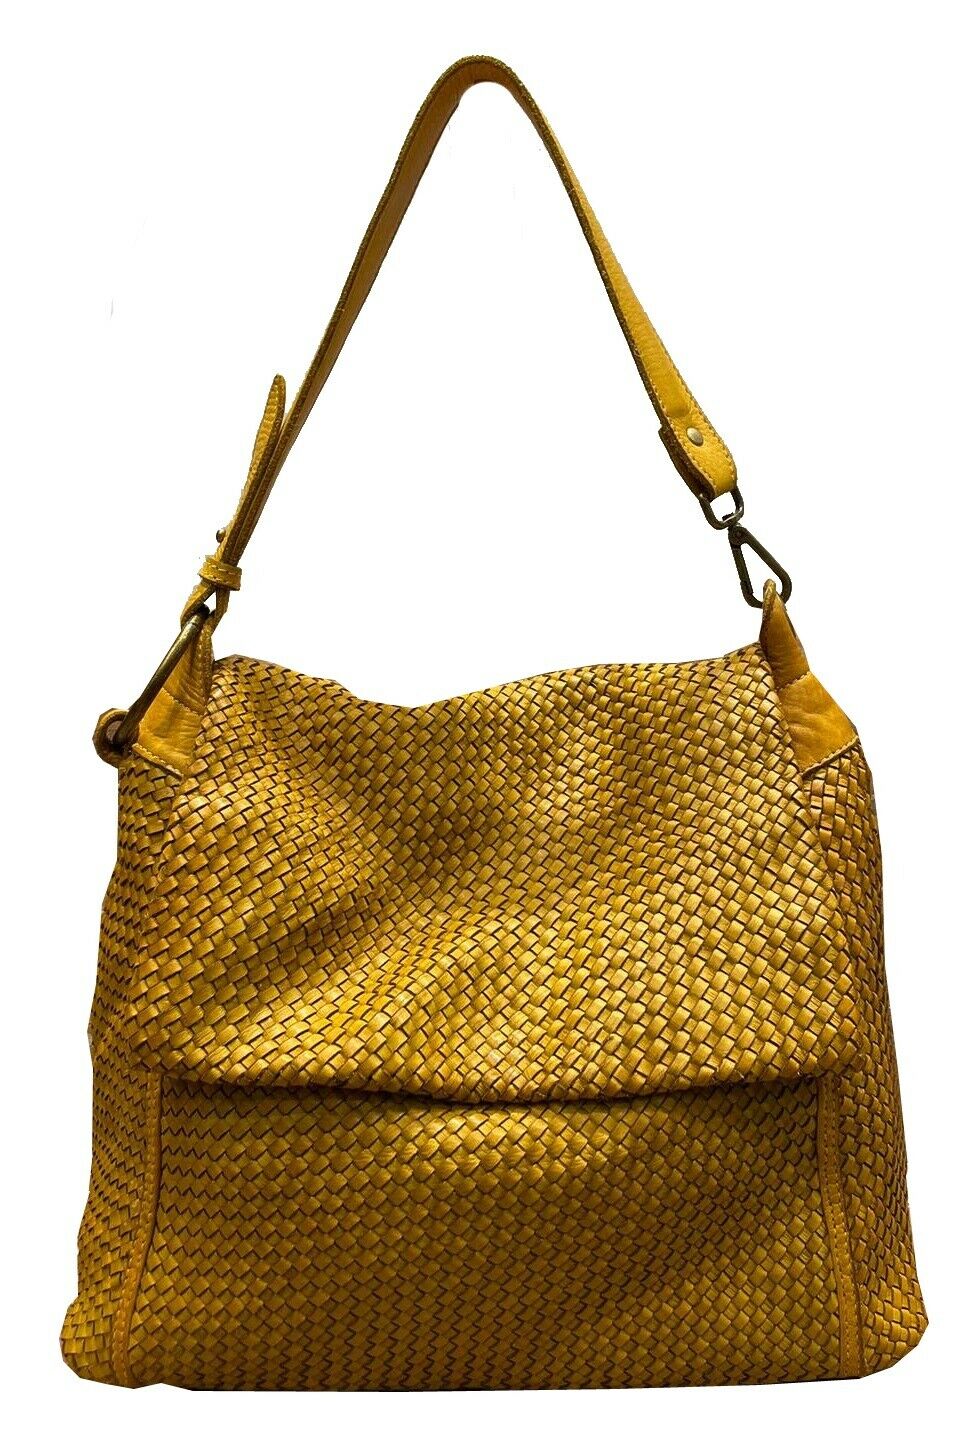 BZNA Bag Tarja Gelb Italy Designer Messenger Damen Handtasche Schultertasche